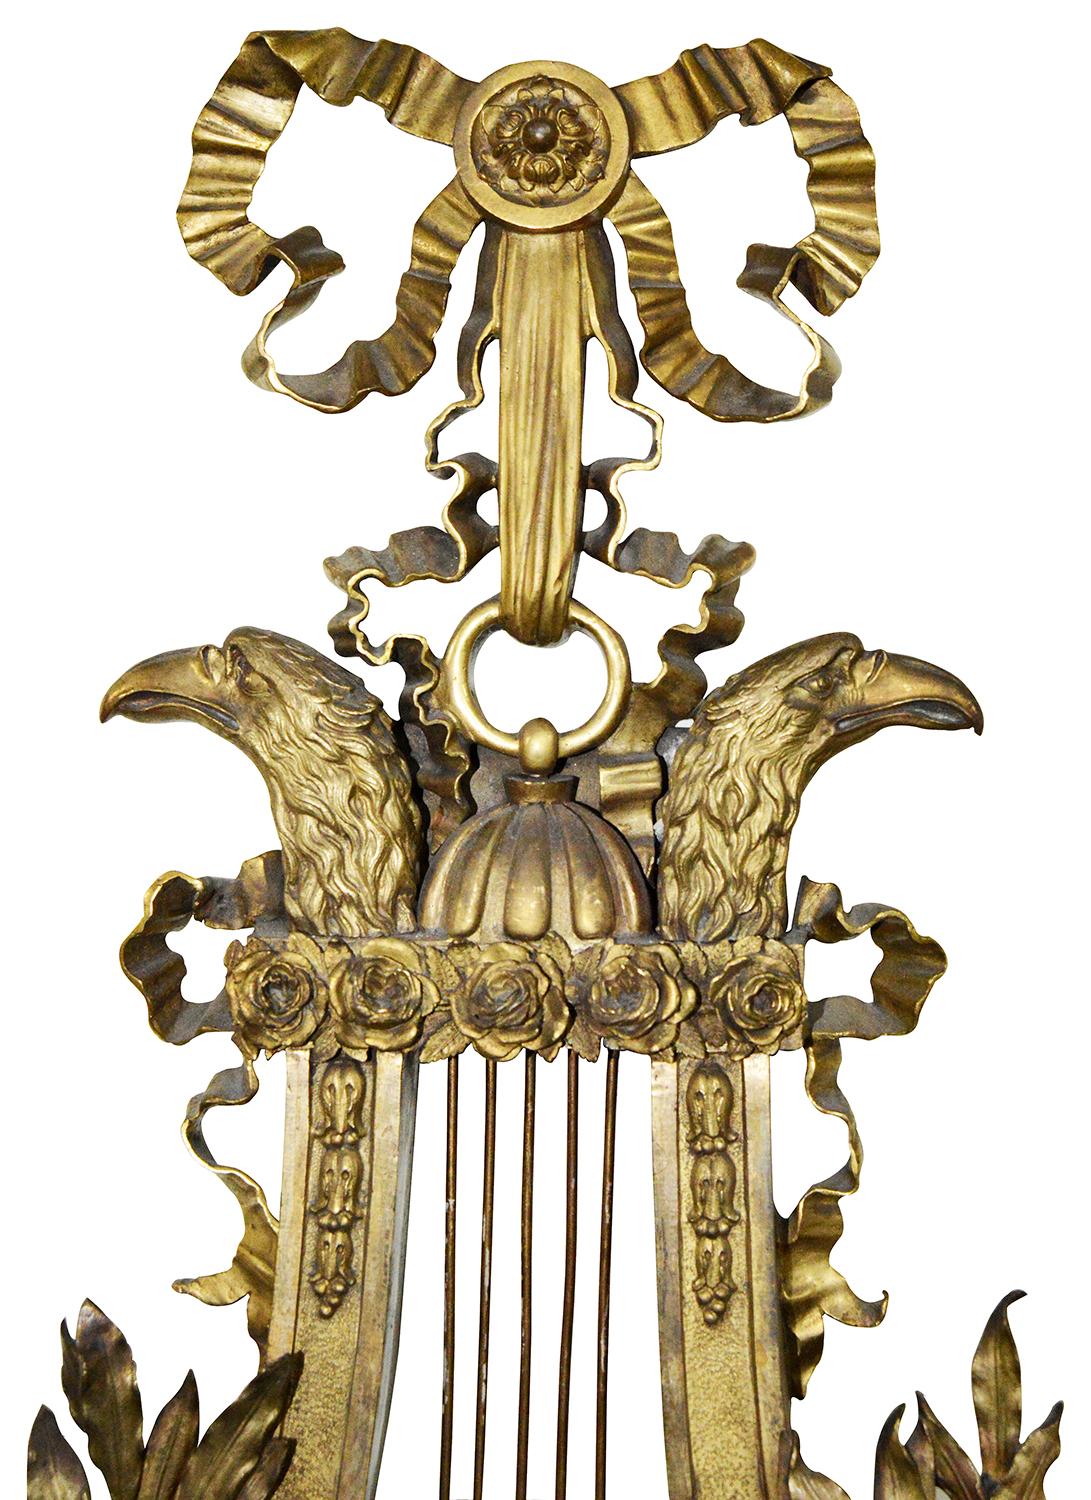 Eine wunderbare, klassische Empire-beeinflusste Cartel-Wanduhr aus vergoldetem Ormolu des 19. Jahrhunderts, mit Band- und Blattwerkdekor. Das weiß emaillierte Zifferblatt ist in eine Leier mit einem Paar stilisierter Adlerköpfe eingefasst. Die Uhr